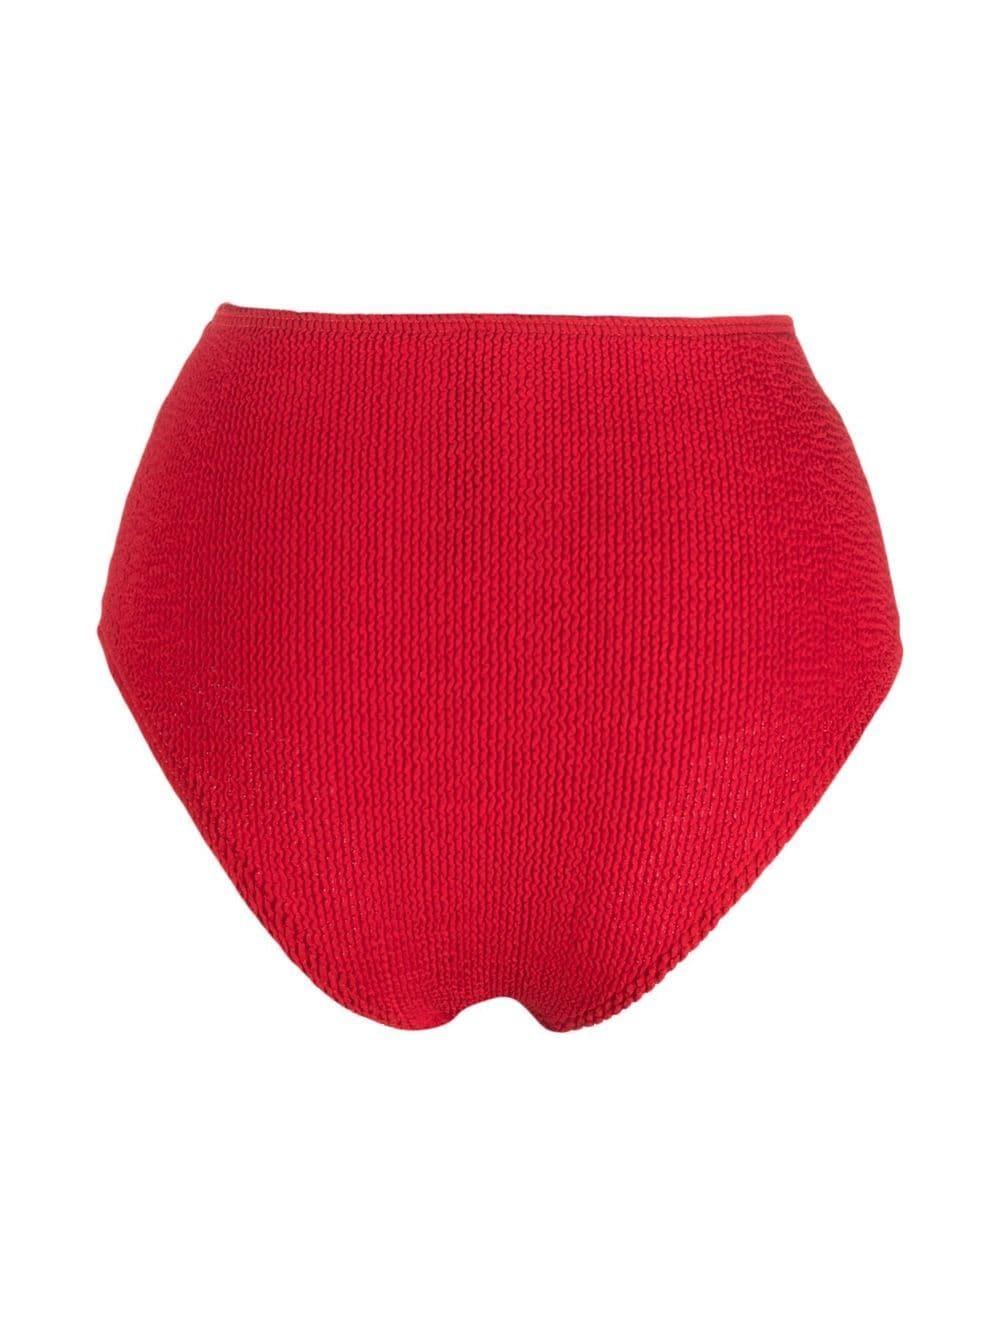 Bond-eye high-waisted bikini bottoms - Red